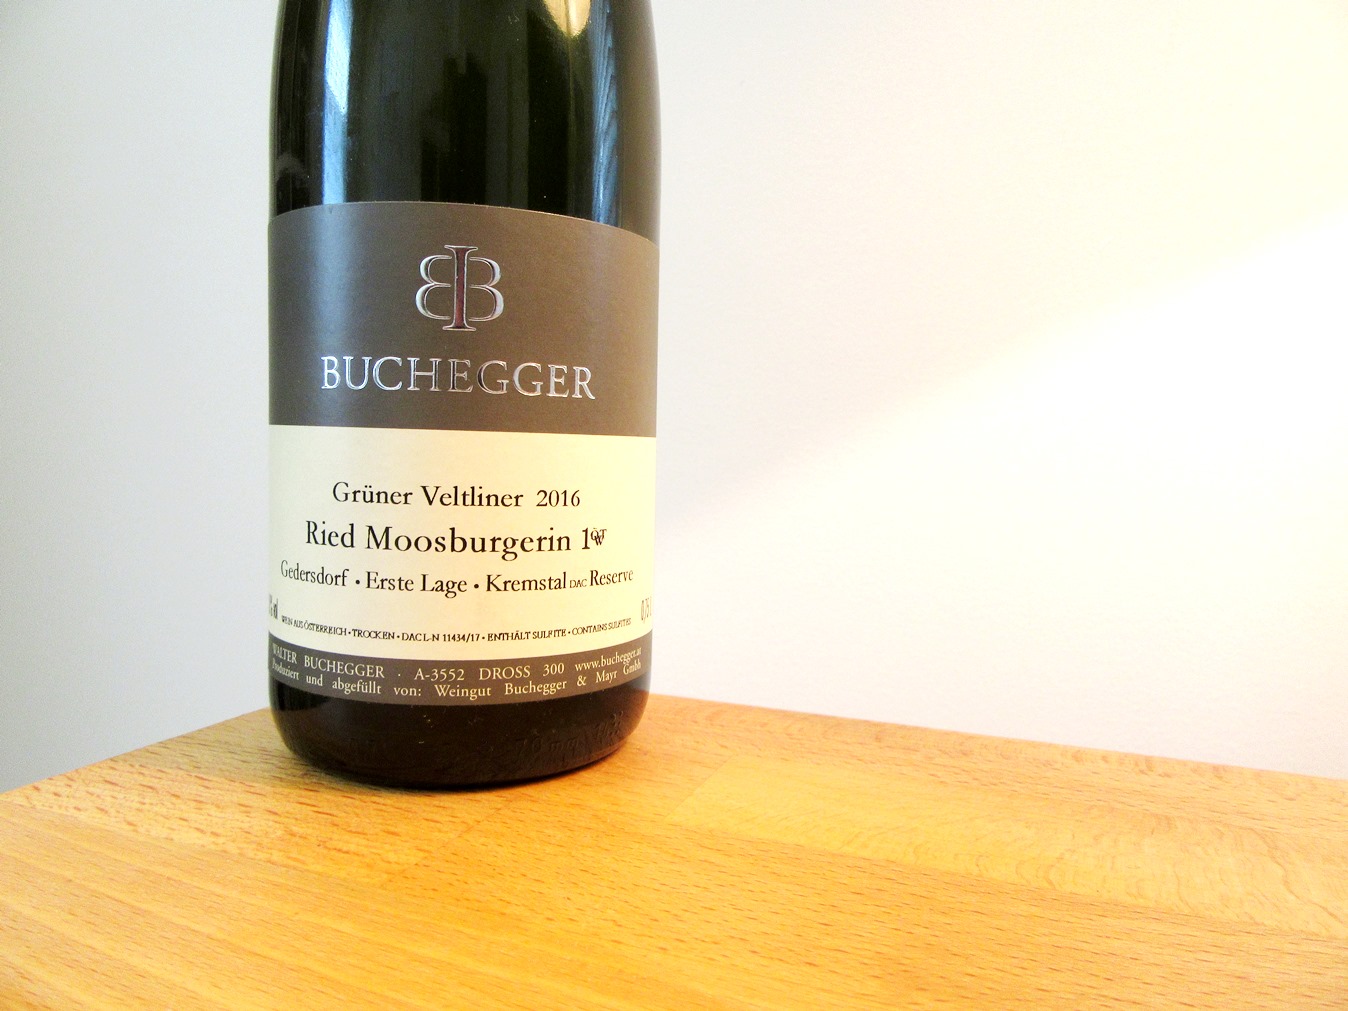 Walter Buchegger, Grüner Veltliner Ried Moosburgerin Erste Lage OTW 2016, Austria, Wine Casual